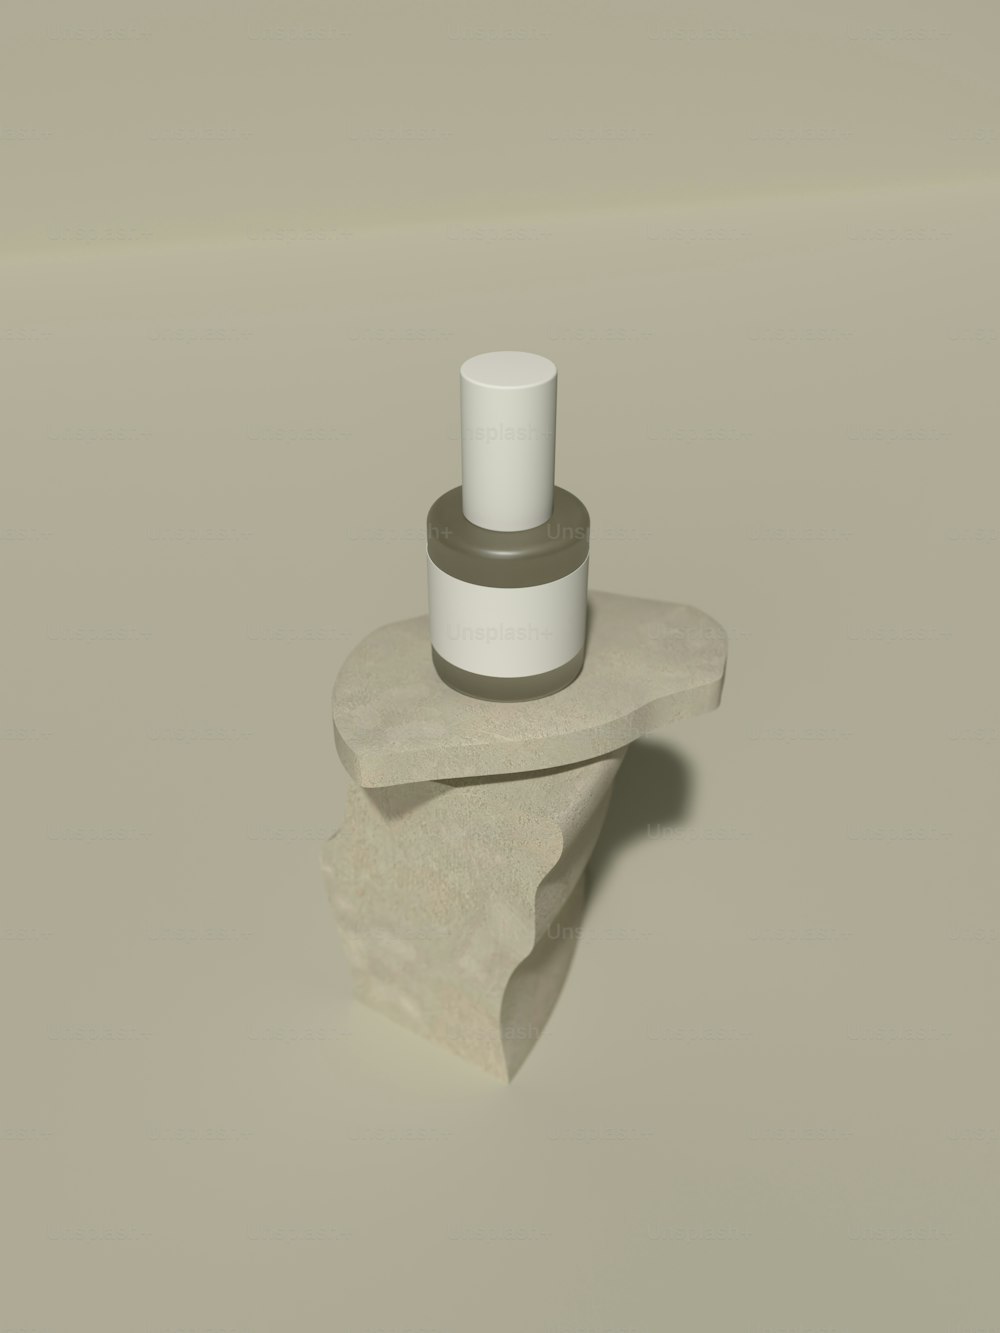 un objet cylindrique blanc avec un objet blanc sur une surface blanche